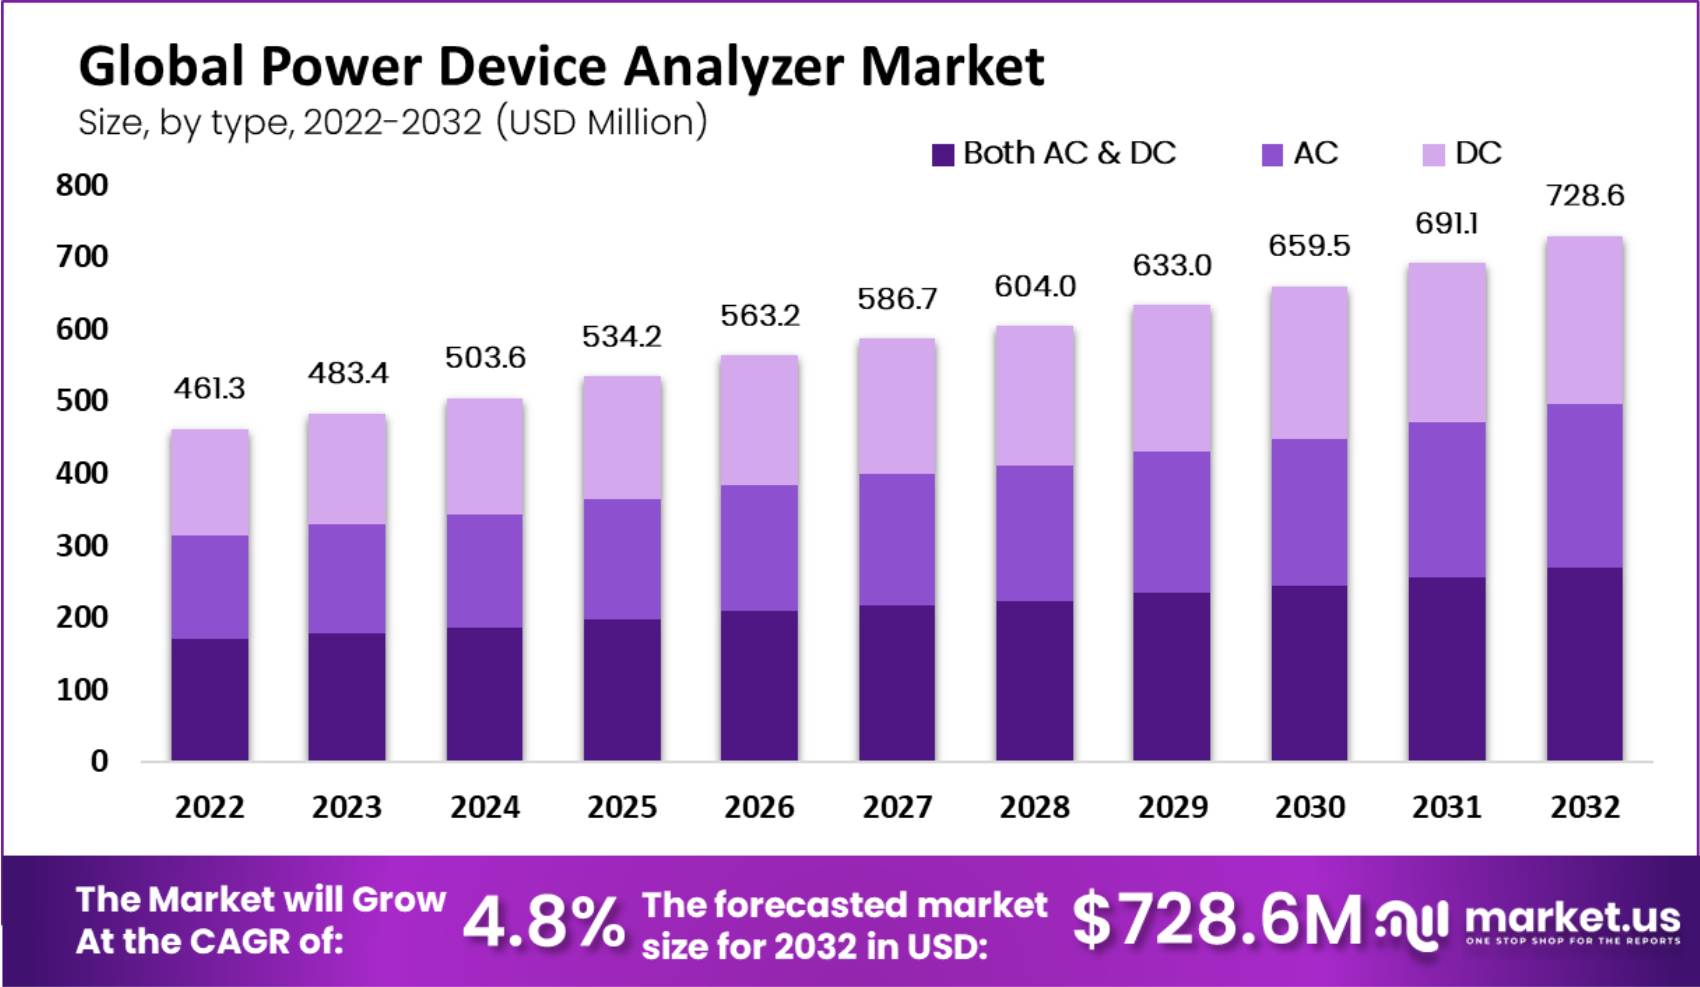 Global Power Device Analyzer Market size